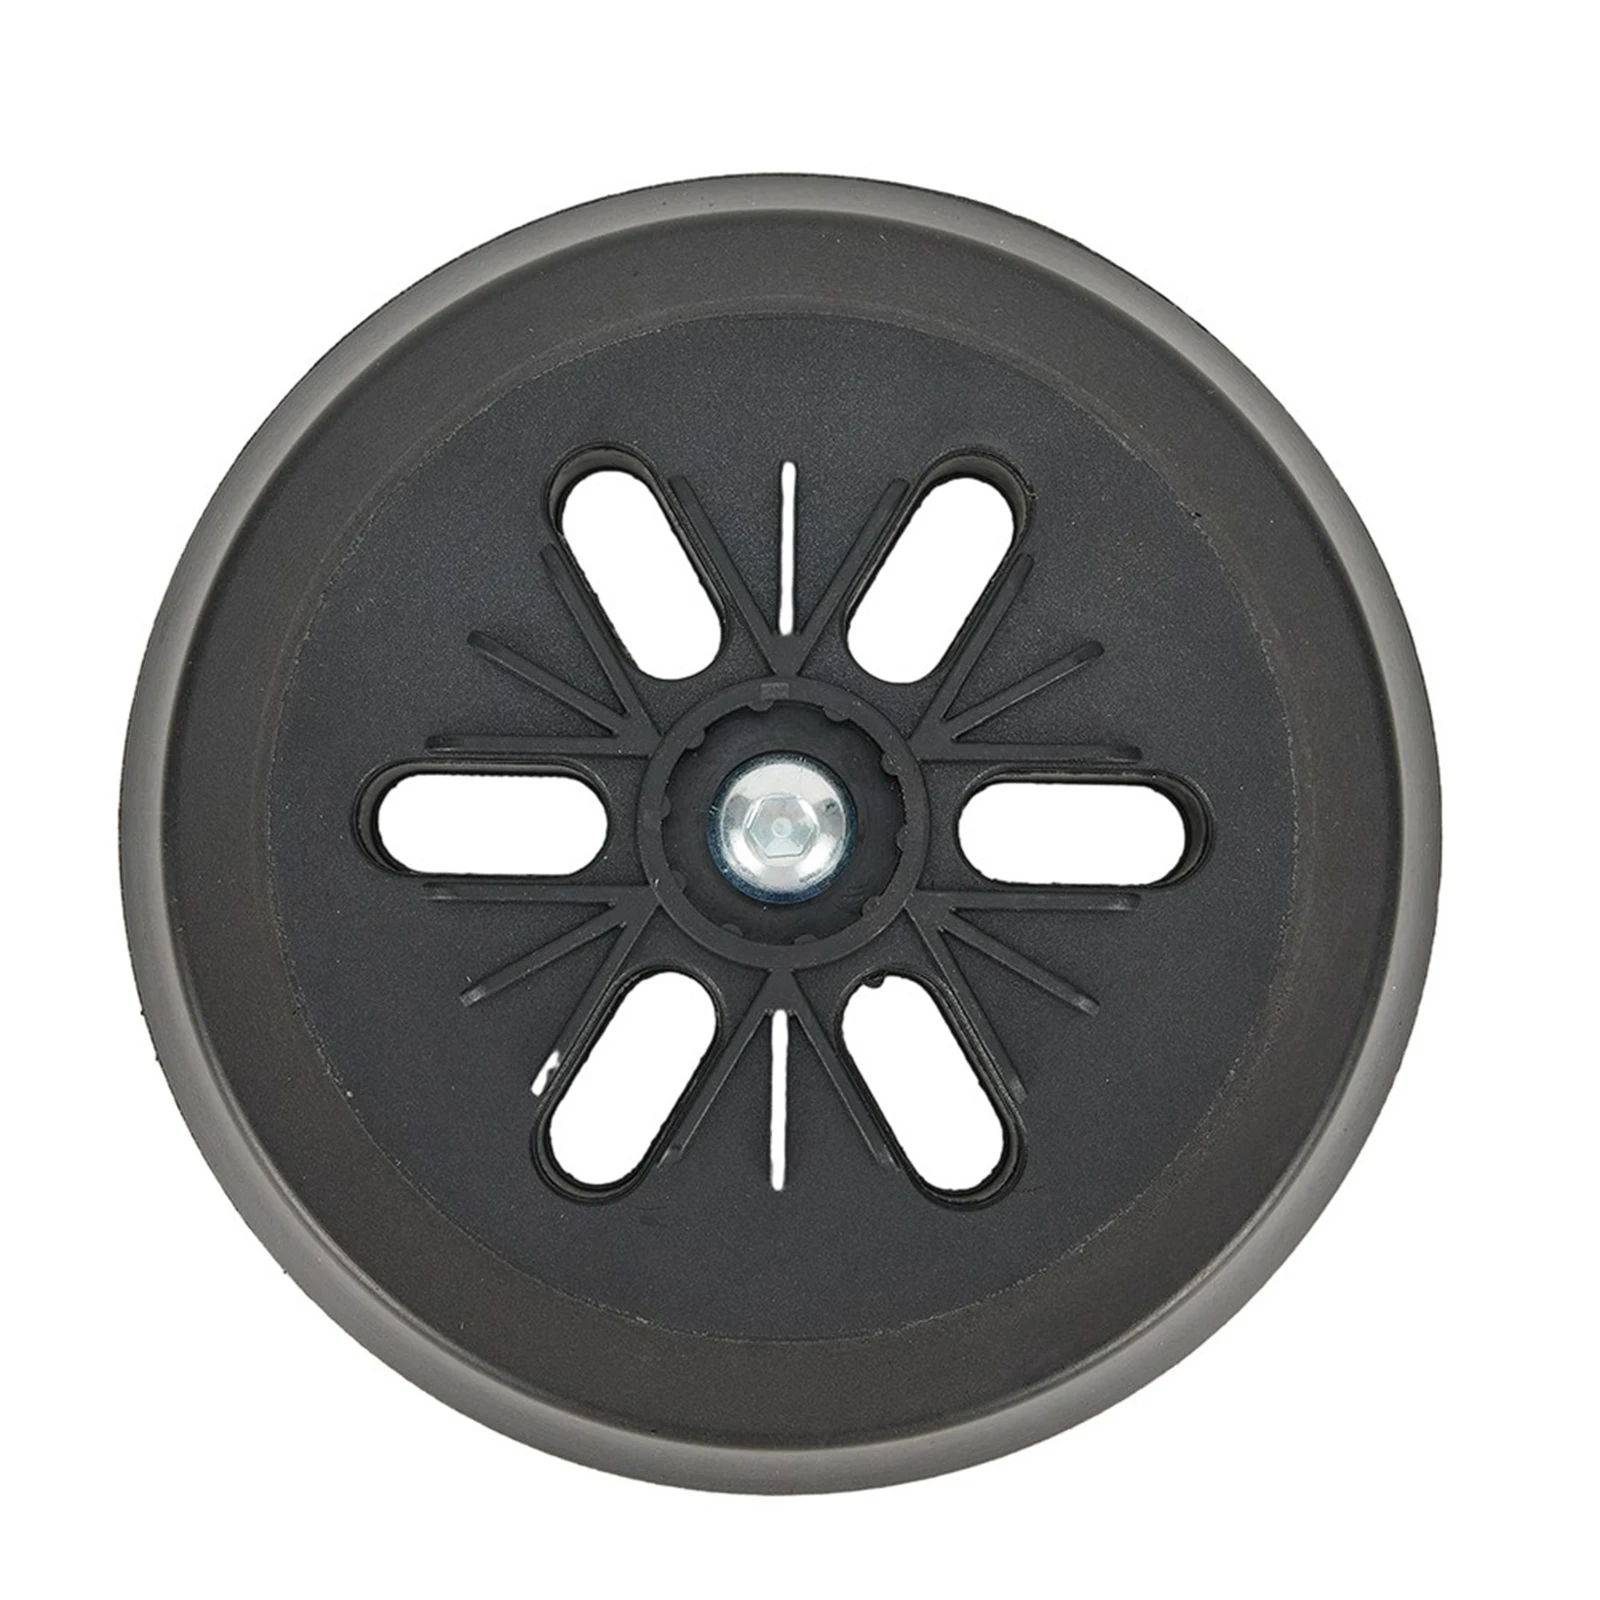 

1 шт. 6-дюймовая шлифовальная подложка, полировальные диски с крючком и петлей для GEX 150 GEX 150 AC GEX 150 Turbo, орбитальный шлифовальный диск, электроинструменты